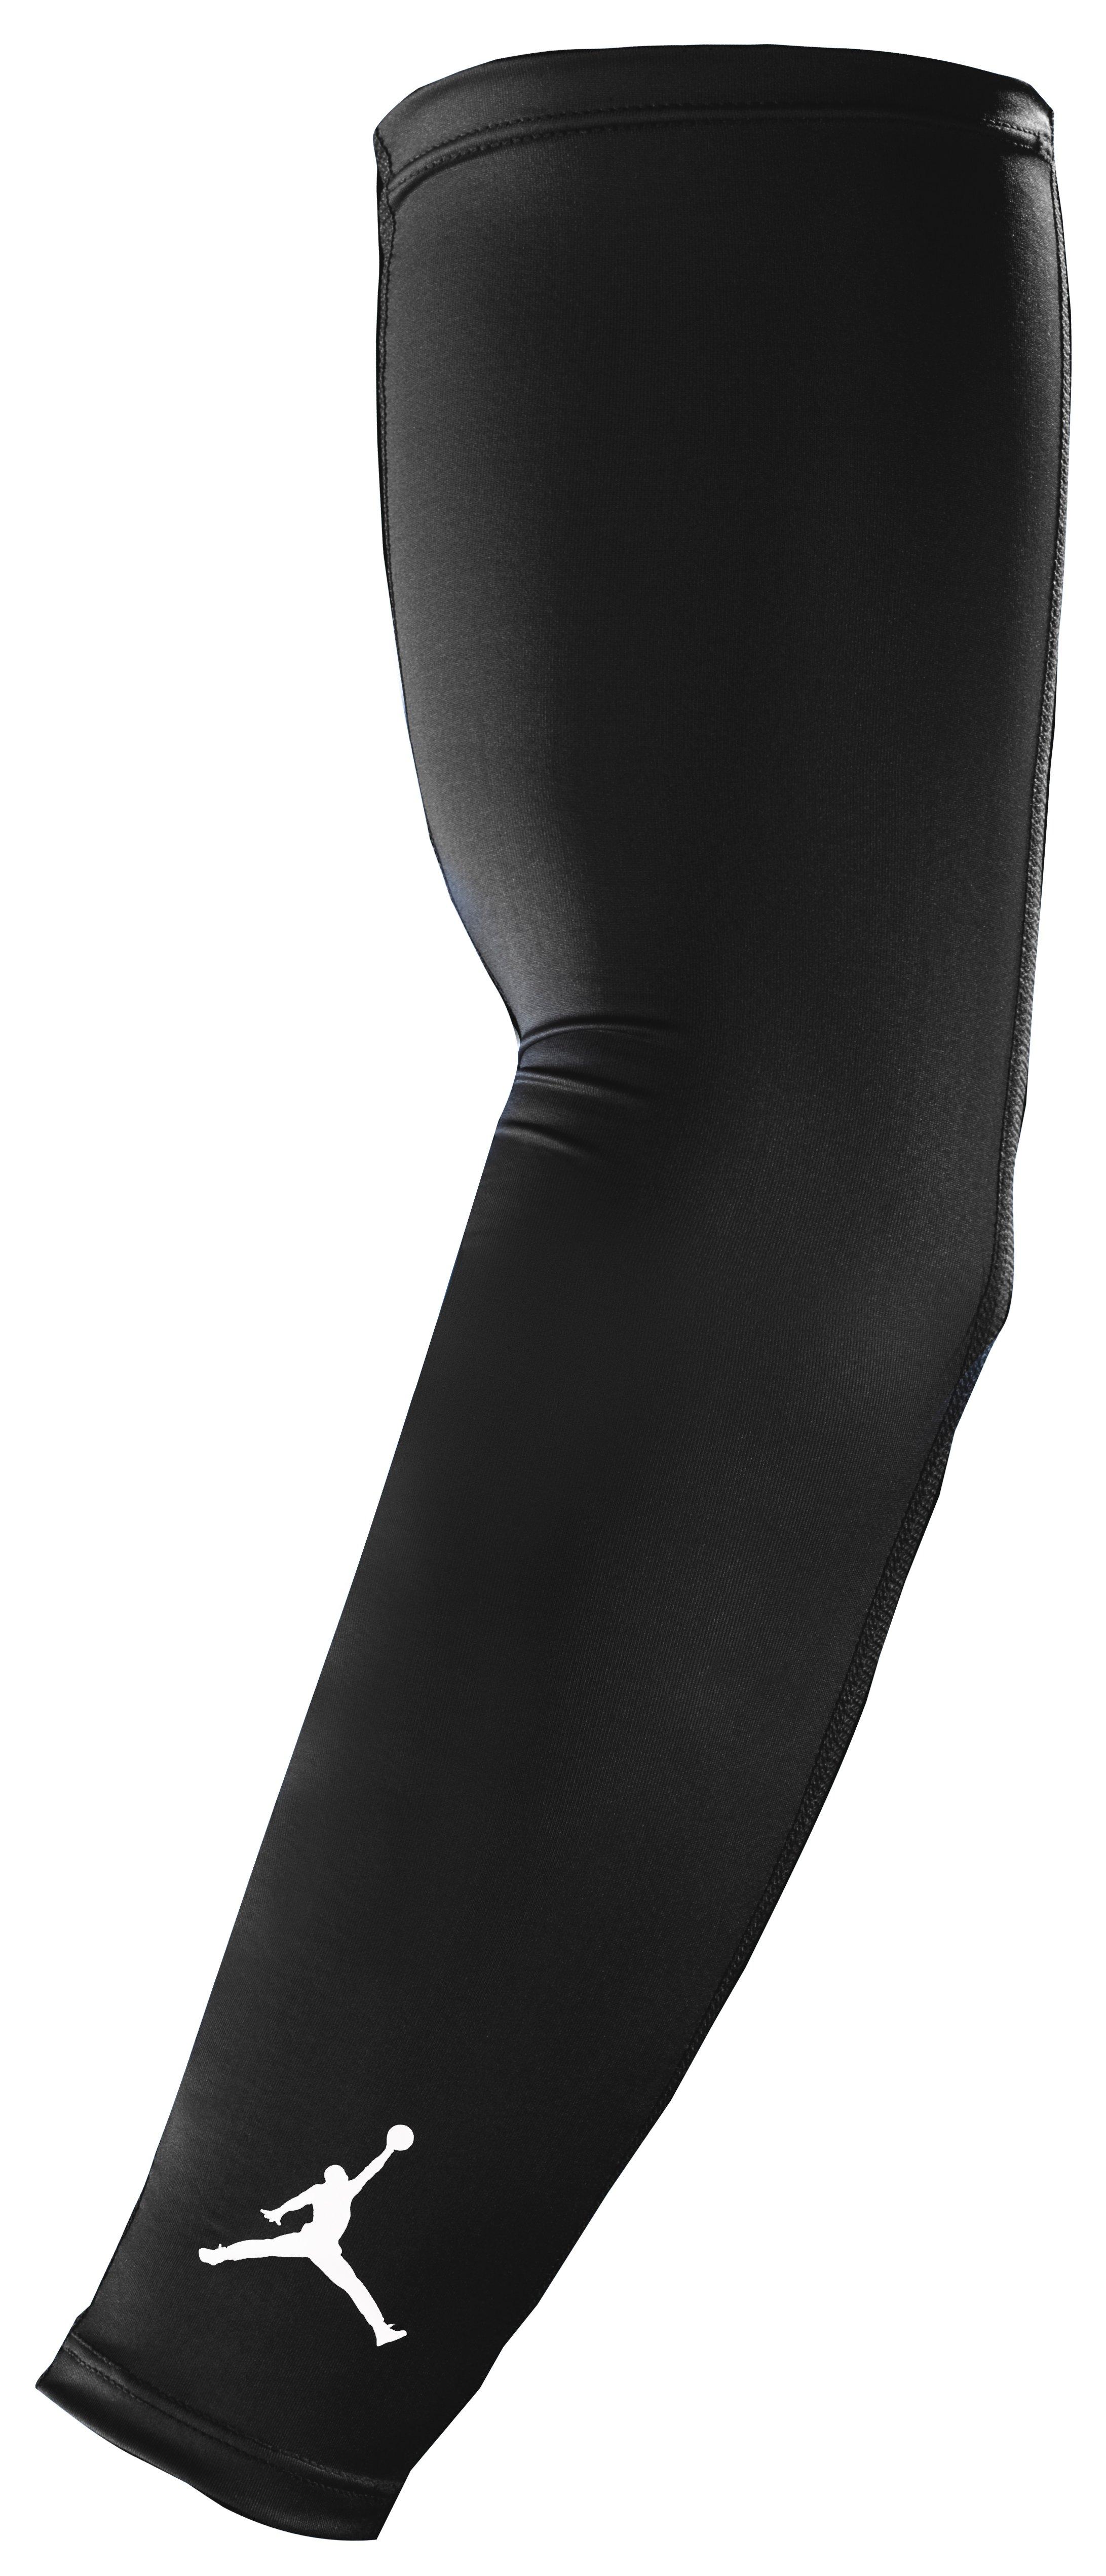 Nike Pro Vapor Forearm Slider Sleeve - Men's